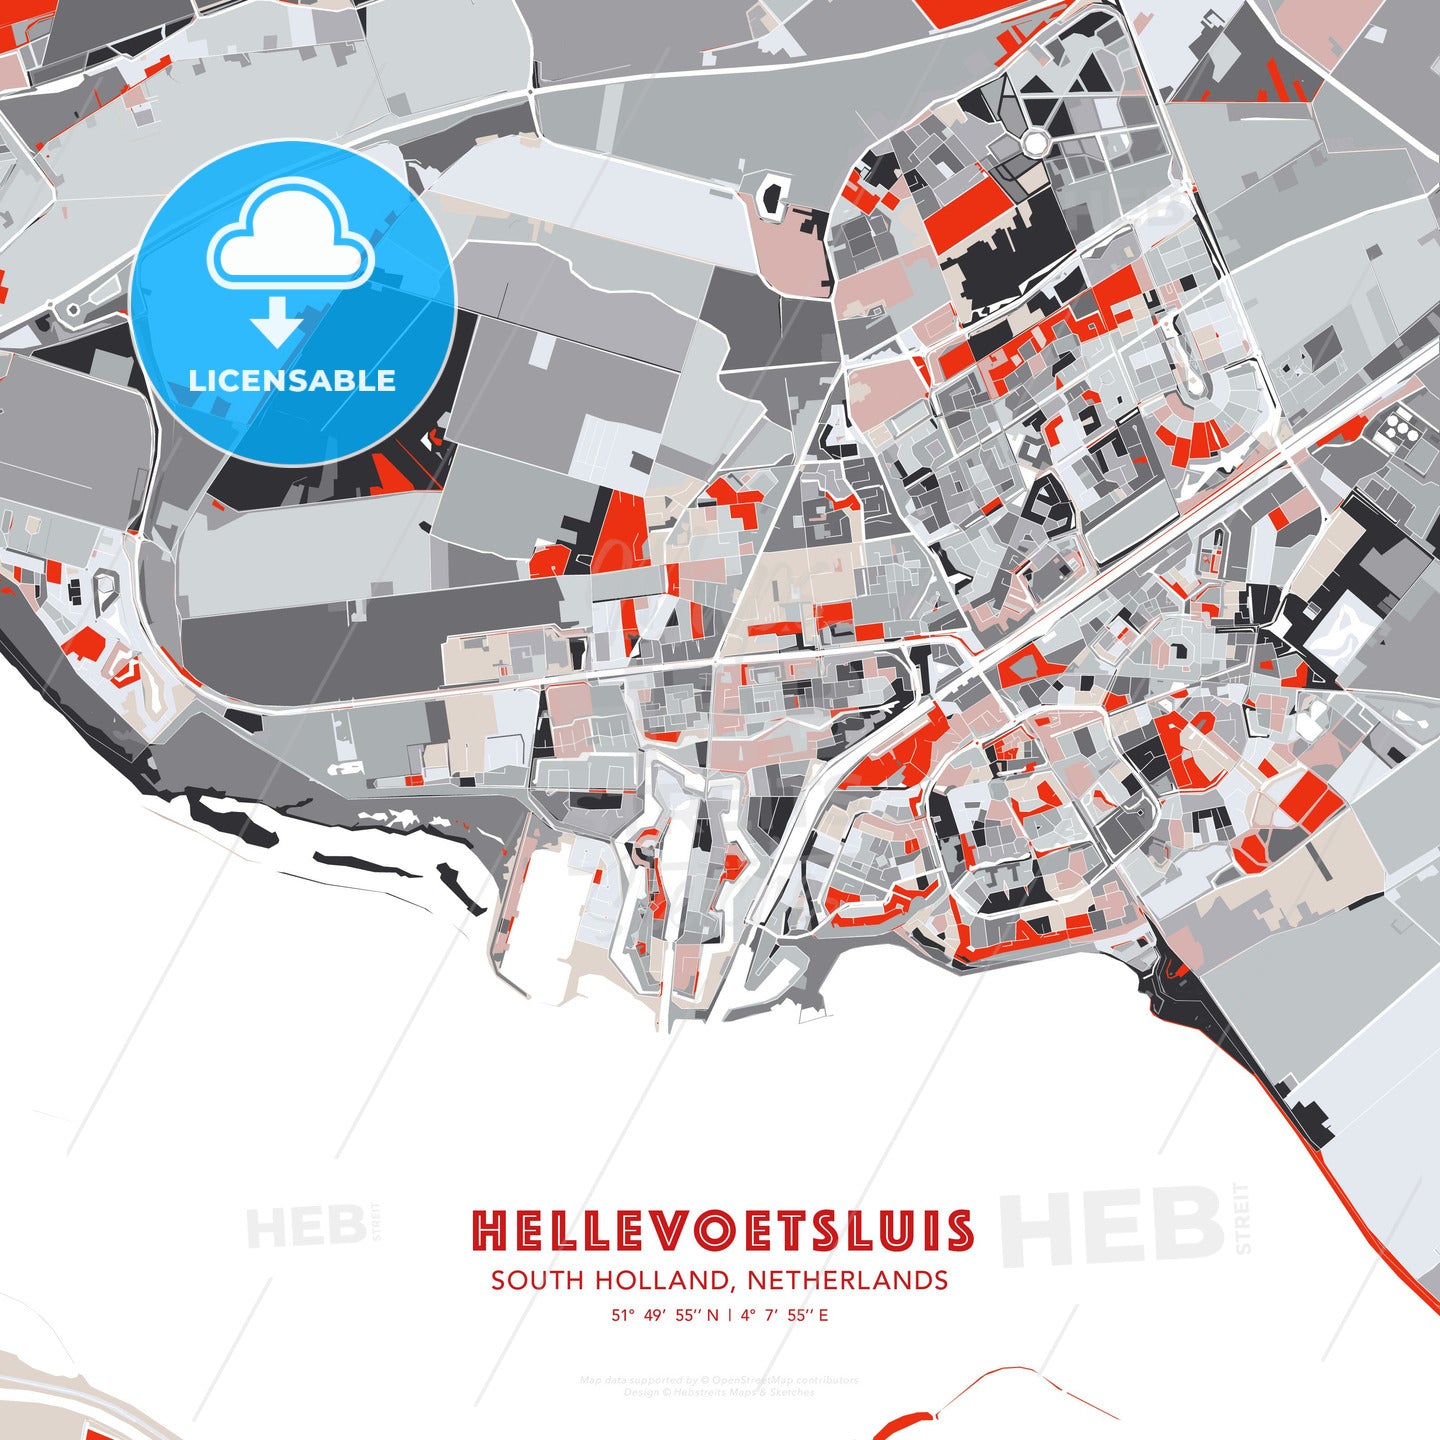 Hellevoetsluis, South Holland, Netherlands, modern map - HEBSTREITS Sketches